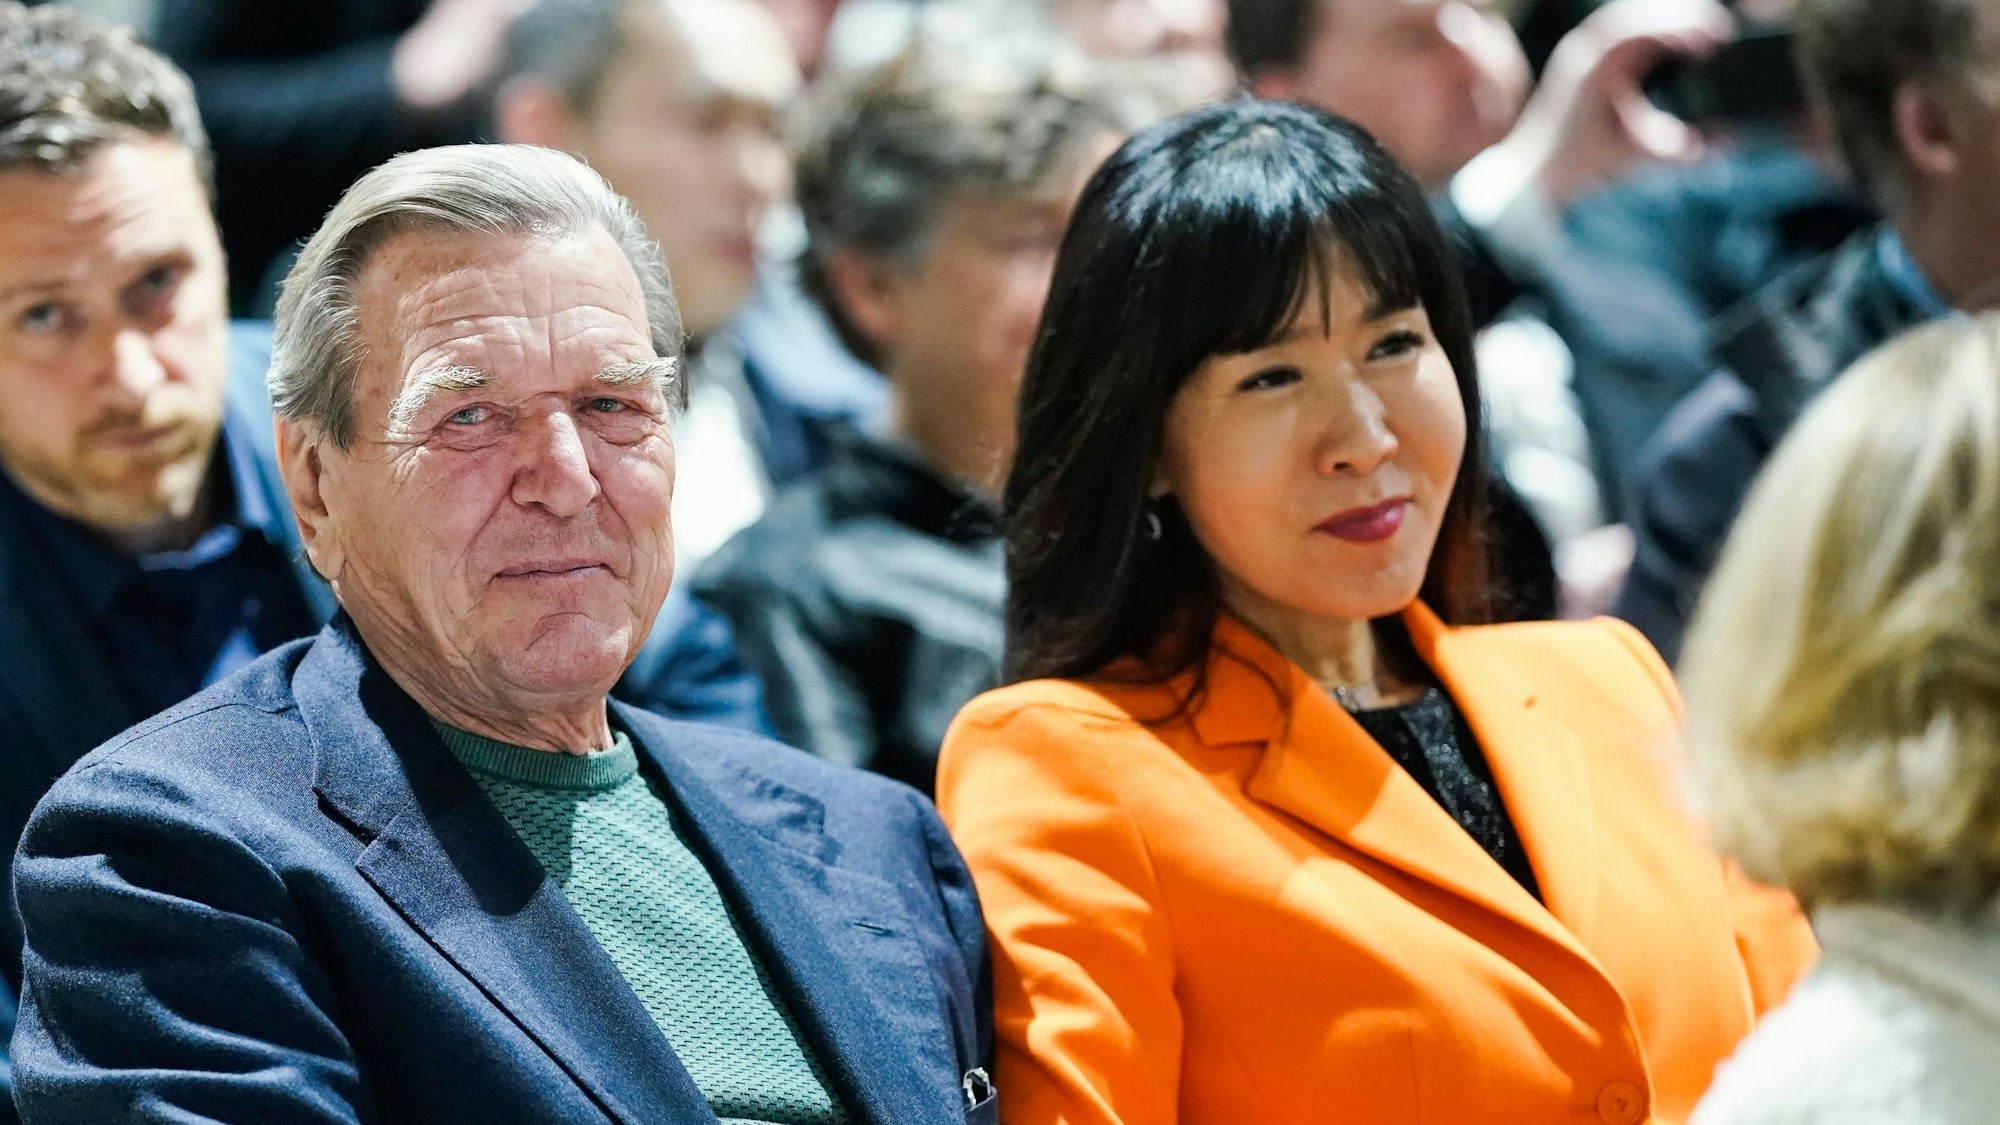 Der ehemalige Bundeskanzler Gerhard Schröder und seine Frau So-yeon Schröder-Kim sitzen im Publikum bei einer Veranstaltung. Frau Schröder-Kim trägt einen orangefarbenen Blazer.